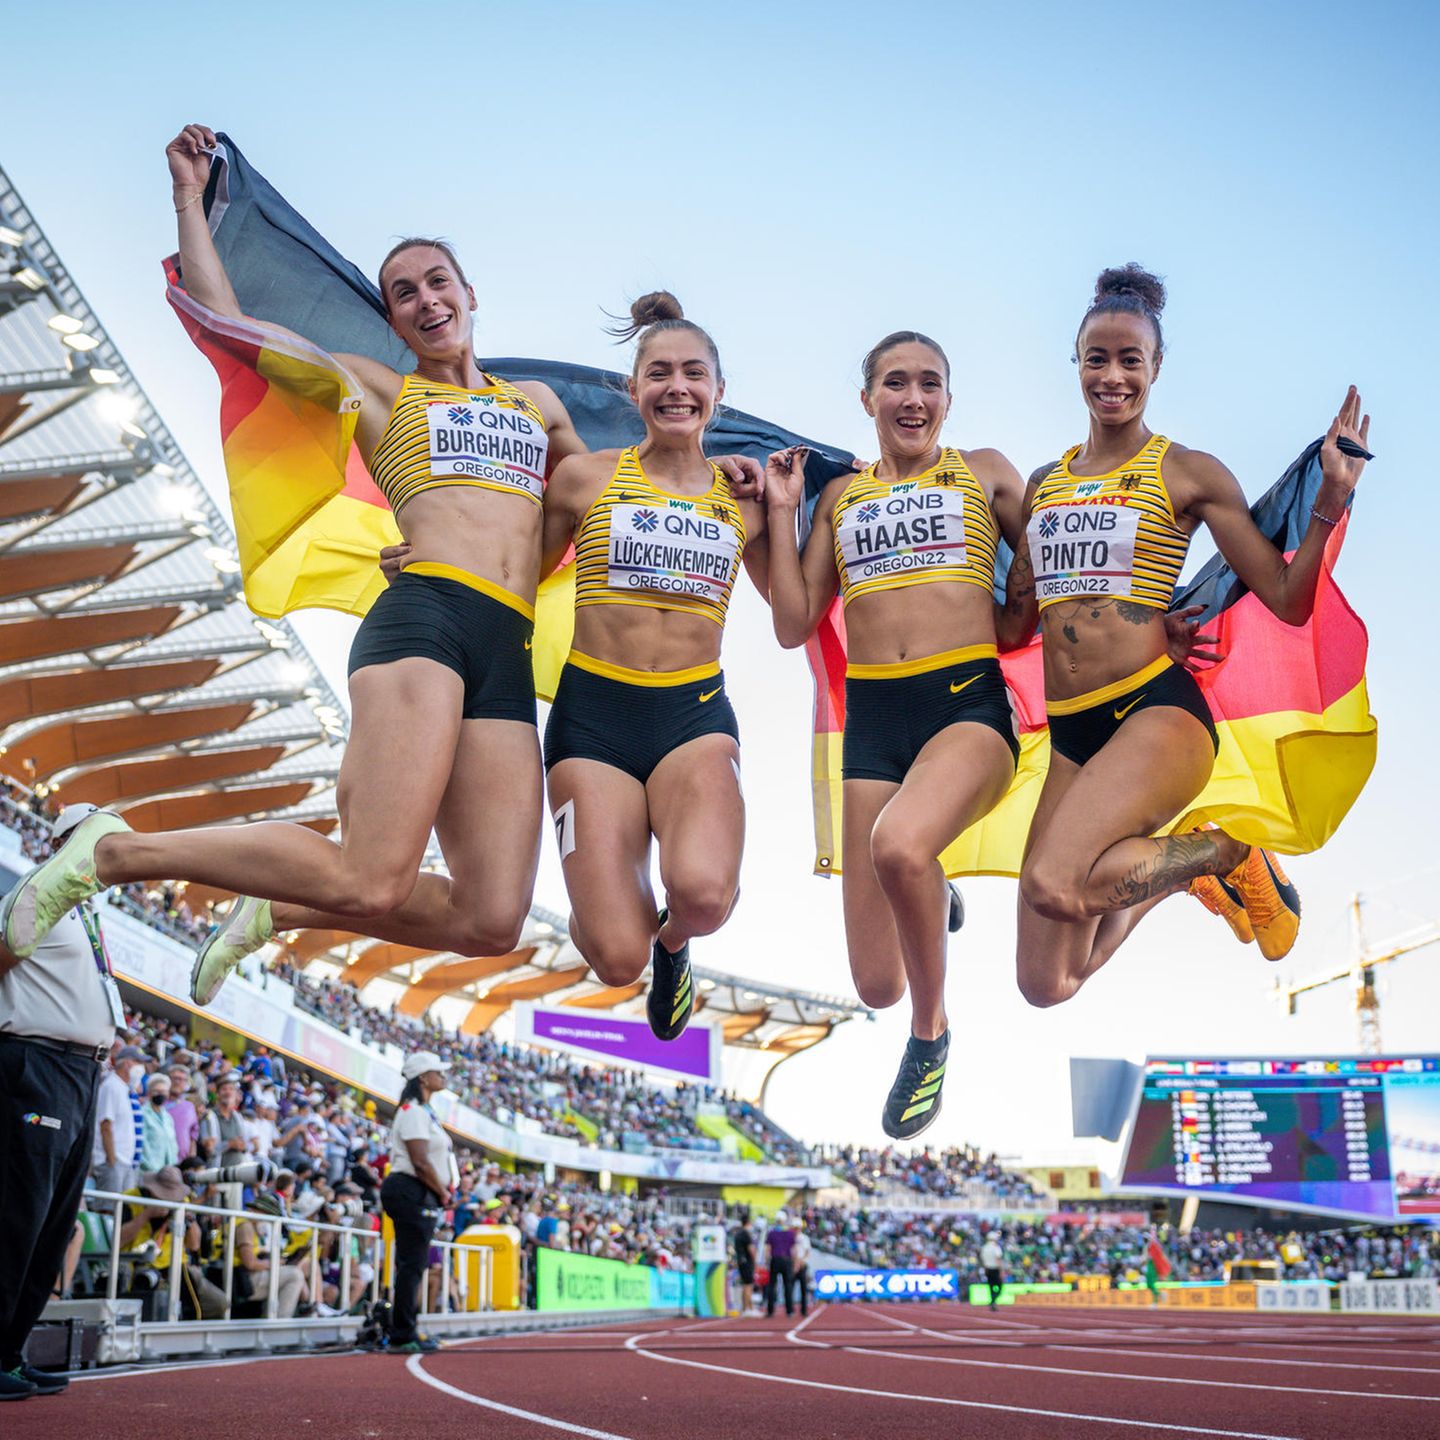 Leichtathletik-WM Frauen-Staffel gewinnt Bronze STERN.de